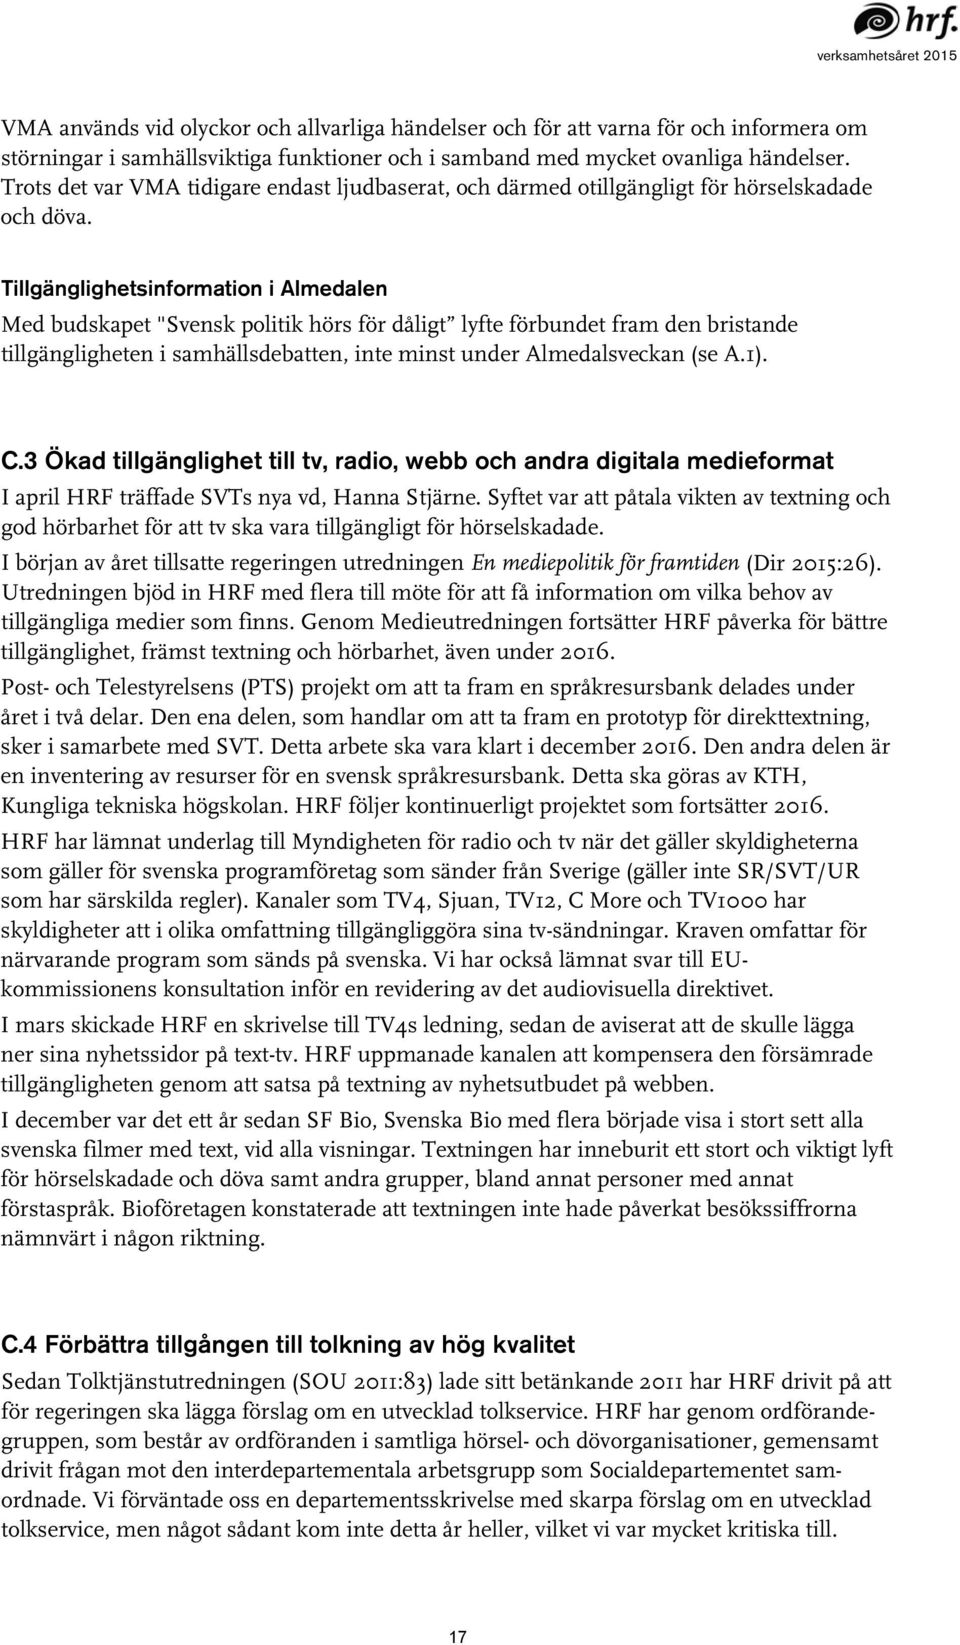 Tillgänglighetsinformation i Almedalen Med budskapet "Svensk politik hörs för dåligt lyfte förbundet fram den bristande tillgängligheten i samhällsdebatten, inte minst under Almedalsveckan (se A.1).